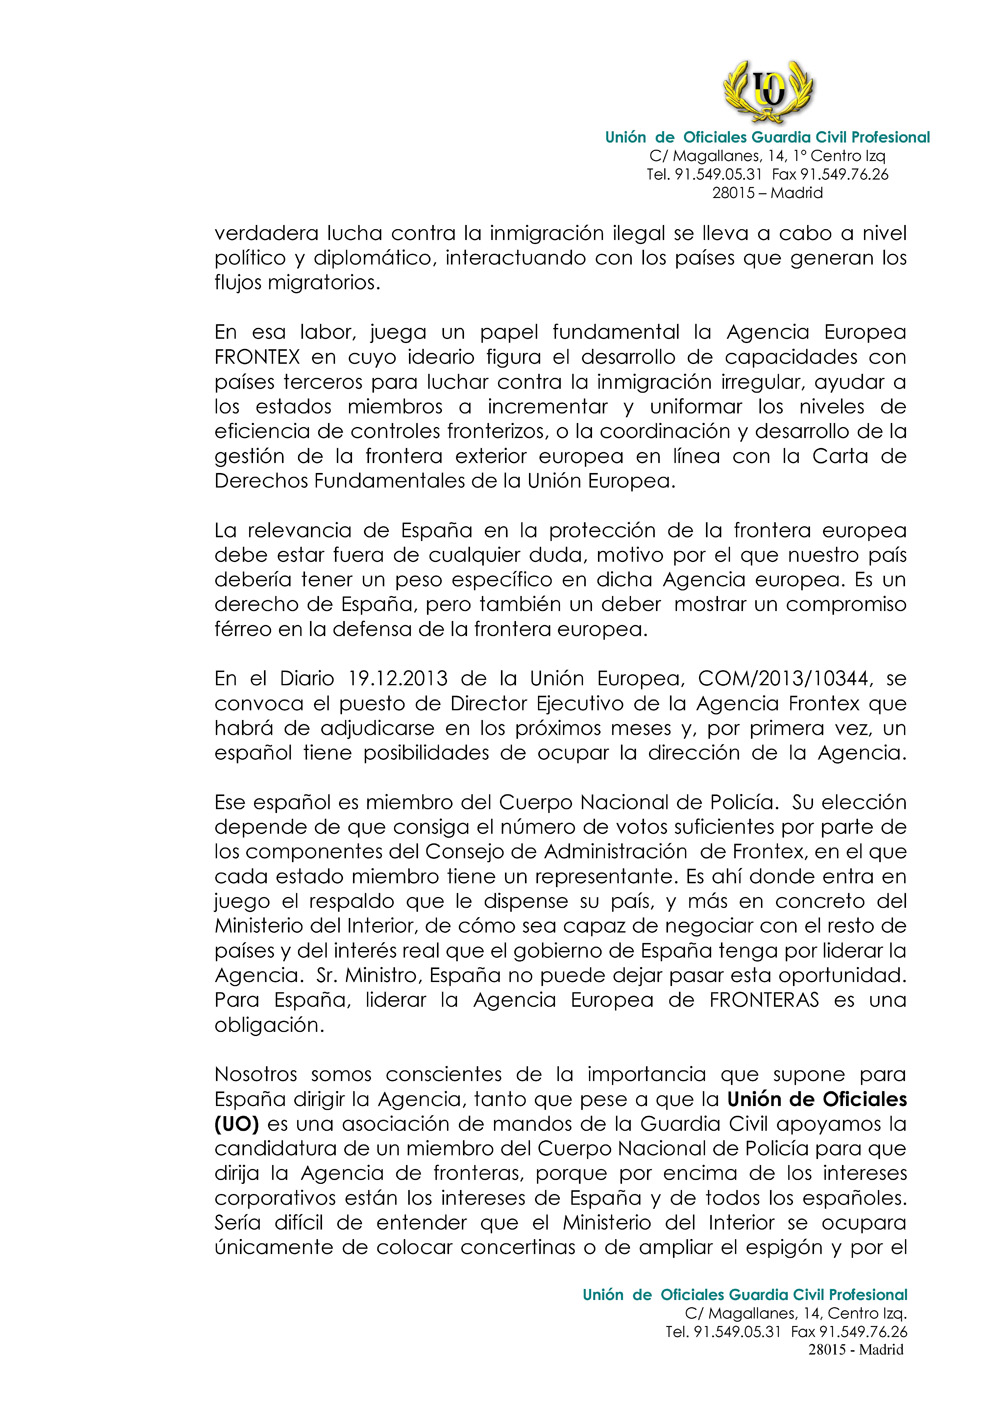 CARTA AL MINISTRO INTERIOR PROBLEMAS FRONTERA_Página_2.jpg